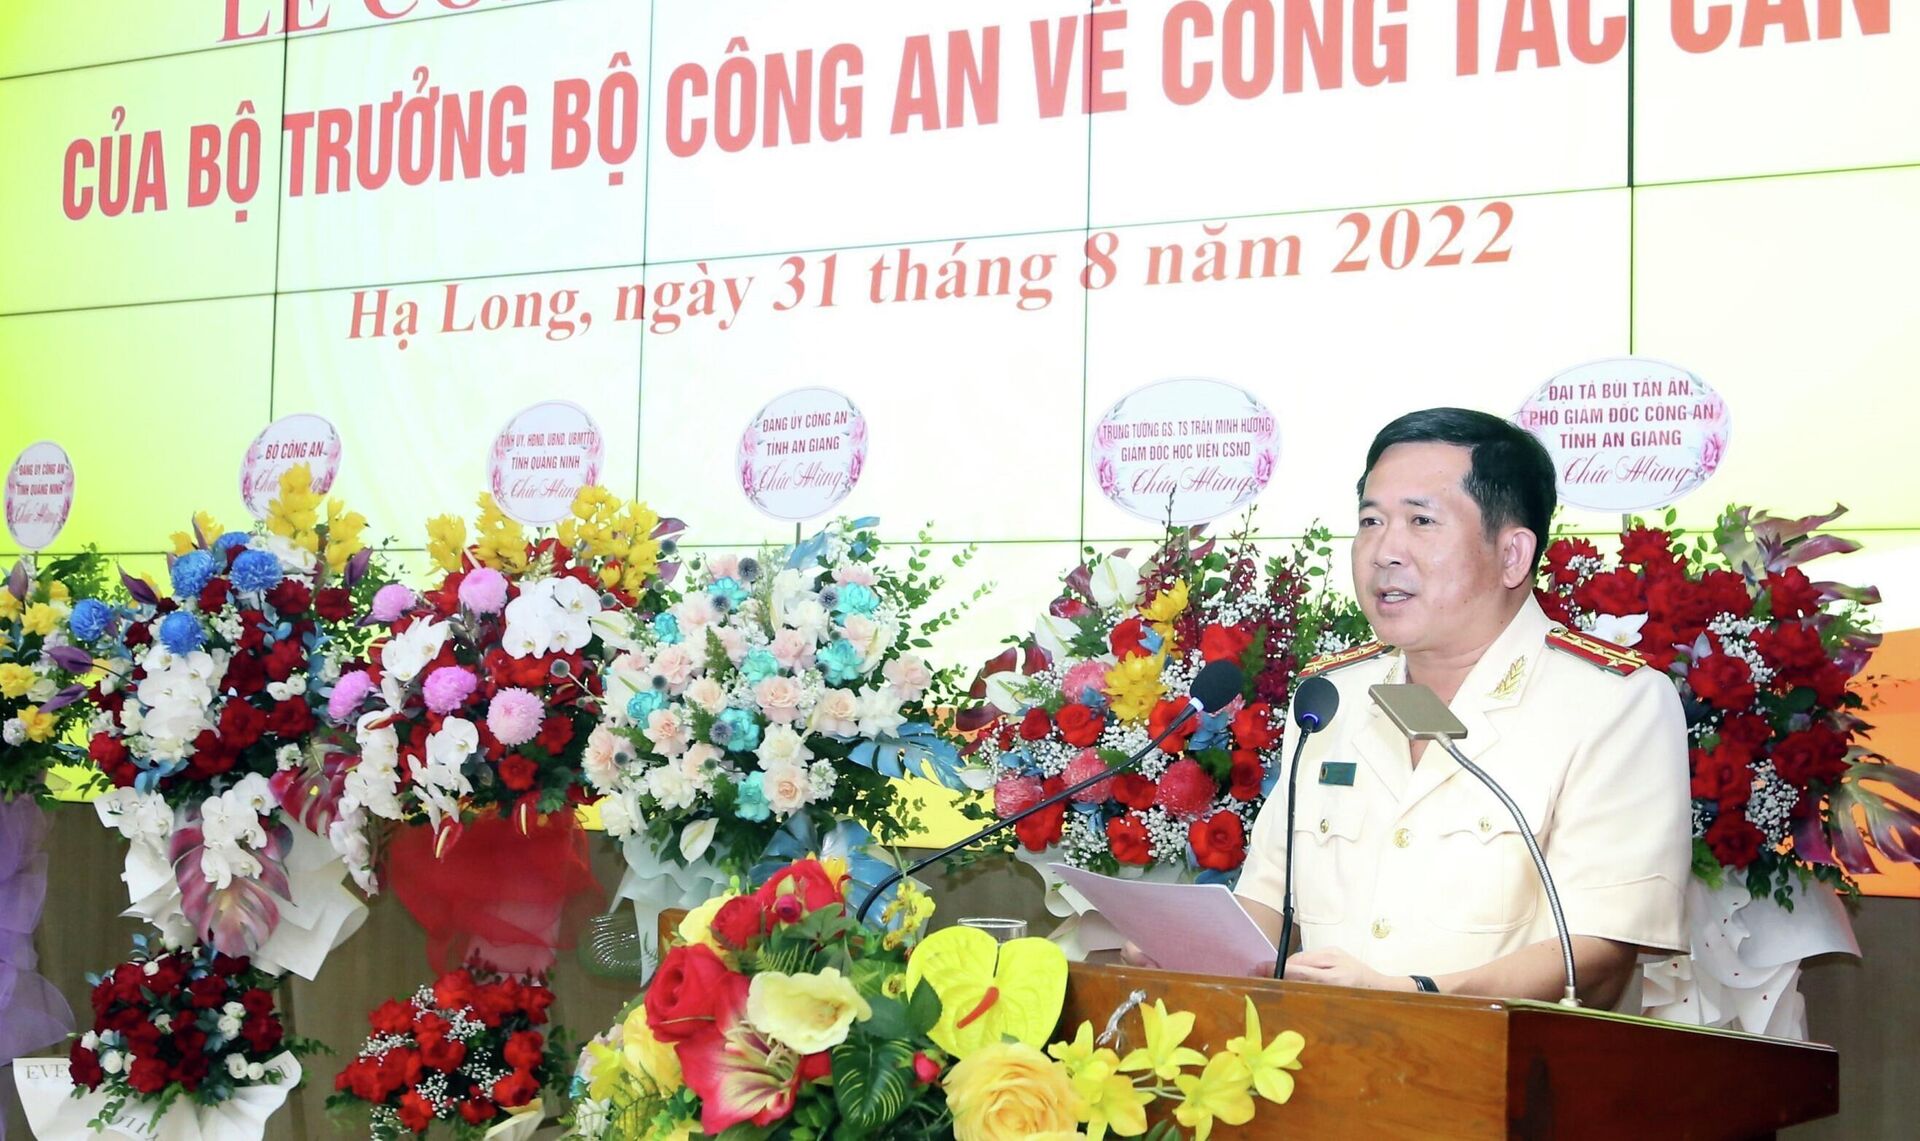 Giám đốc Công an tỉnh An Giang được điều động giữ chức vụ Giám đốc Công an tỉnh Quảng Ninh - Sputnik Việt Nam, 1920, 31.08.2022